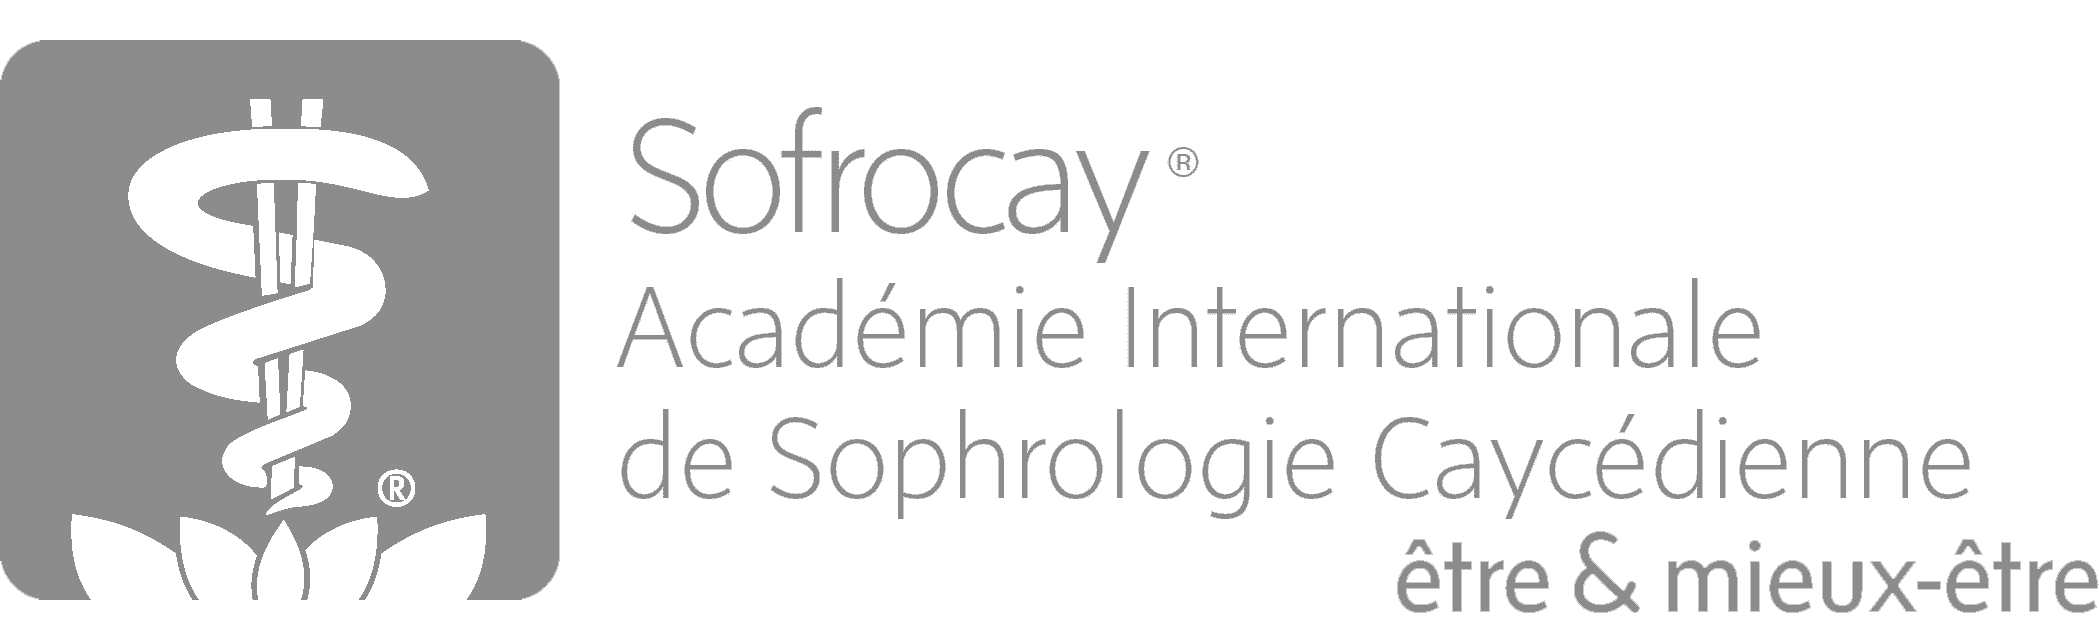 Sofrocay Logo gray